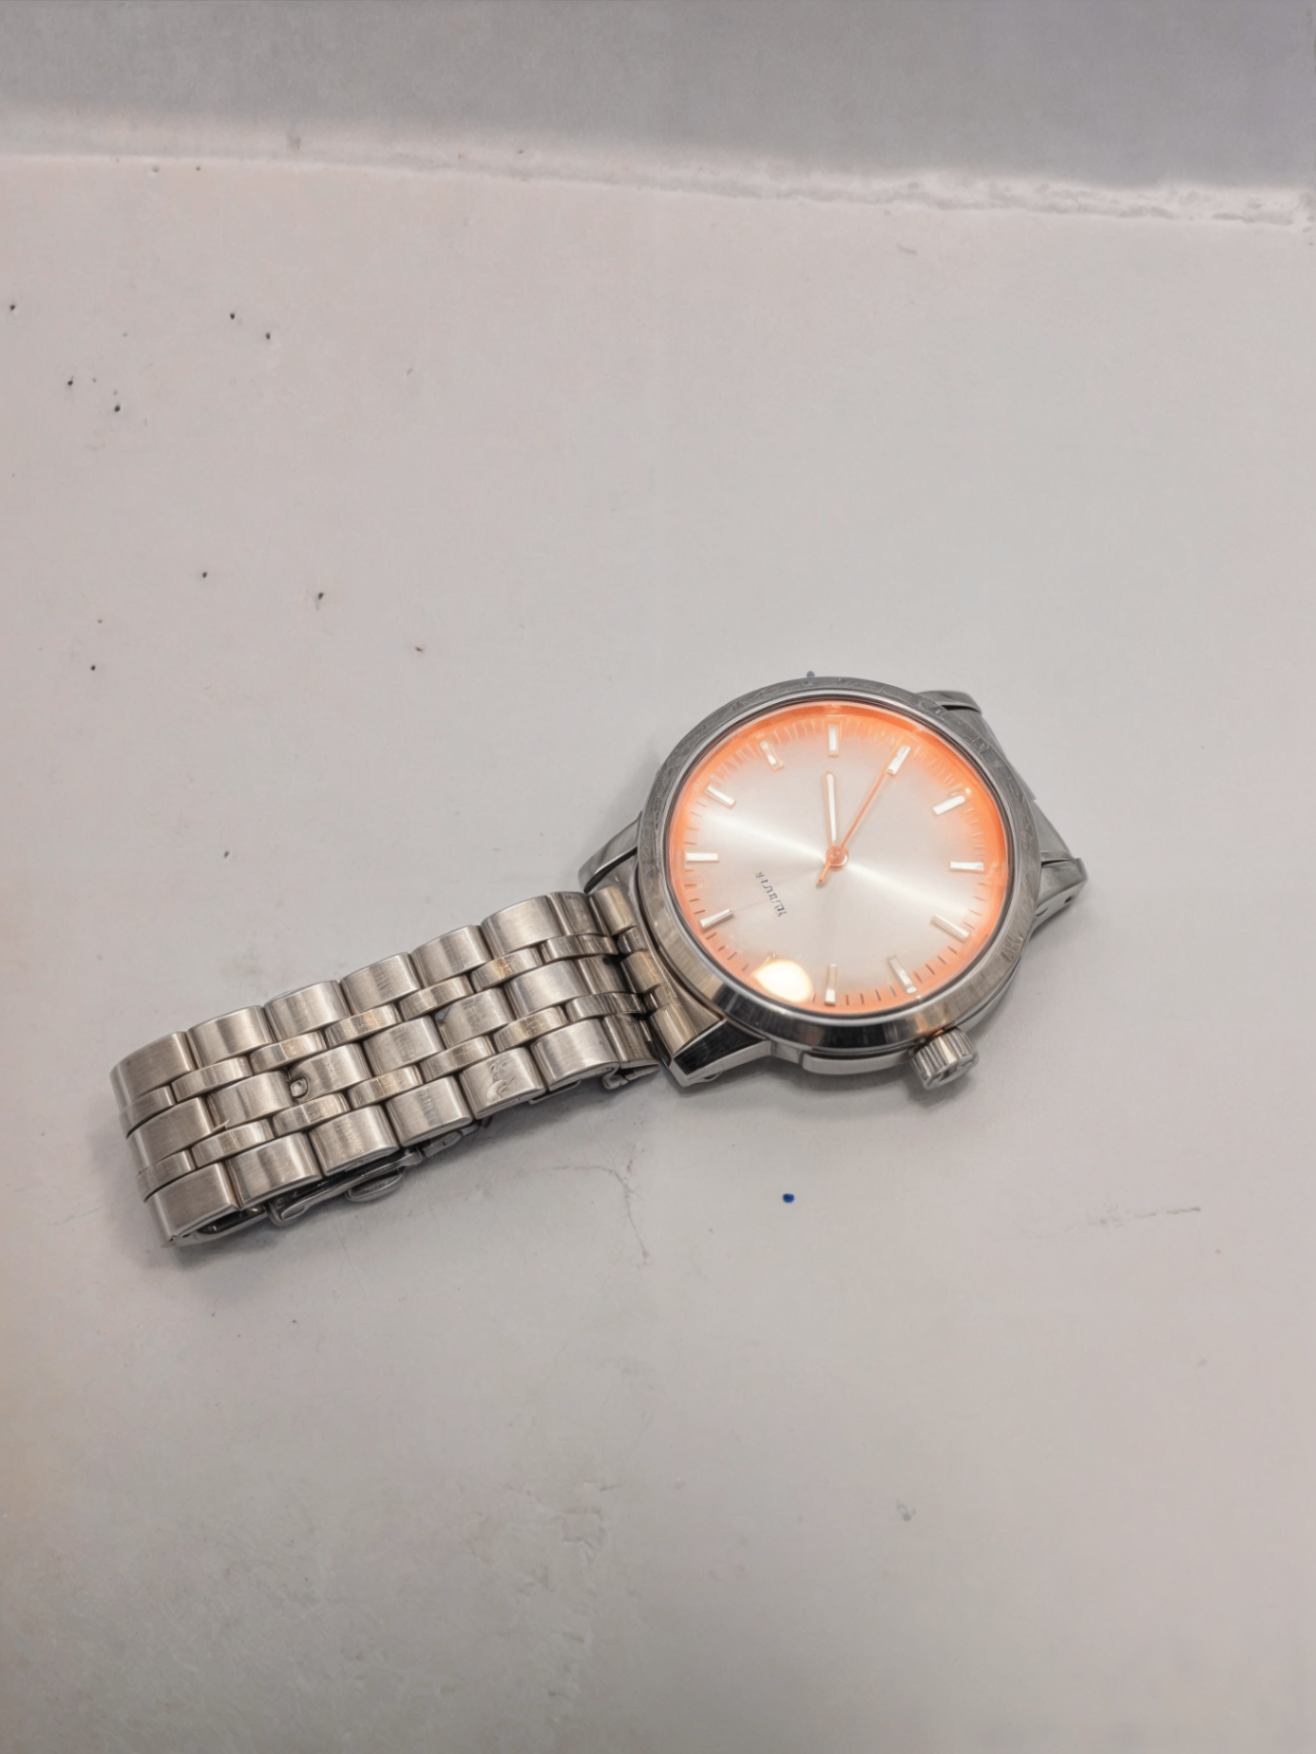 orange watch on white surface